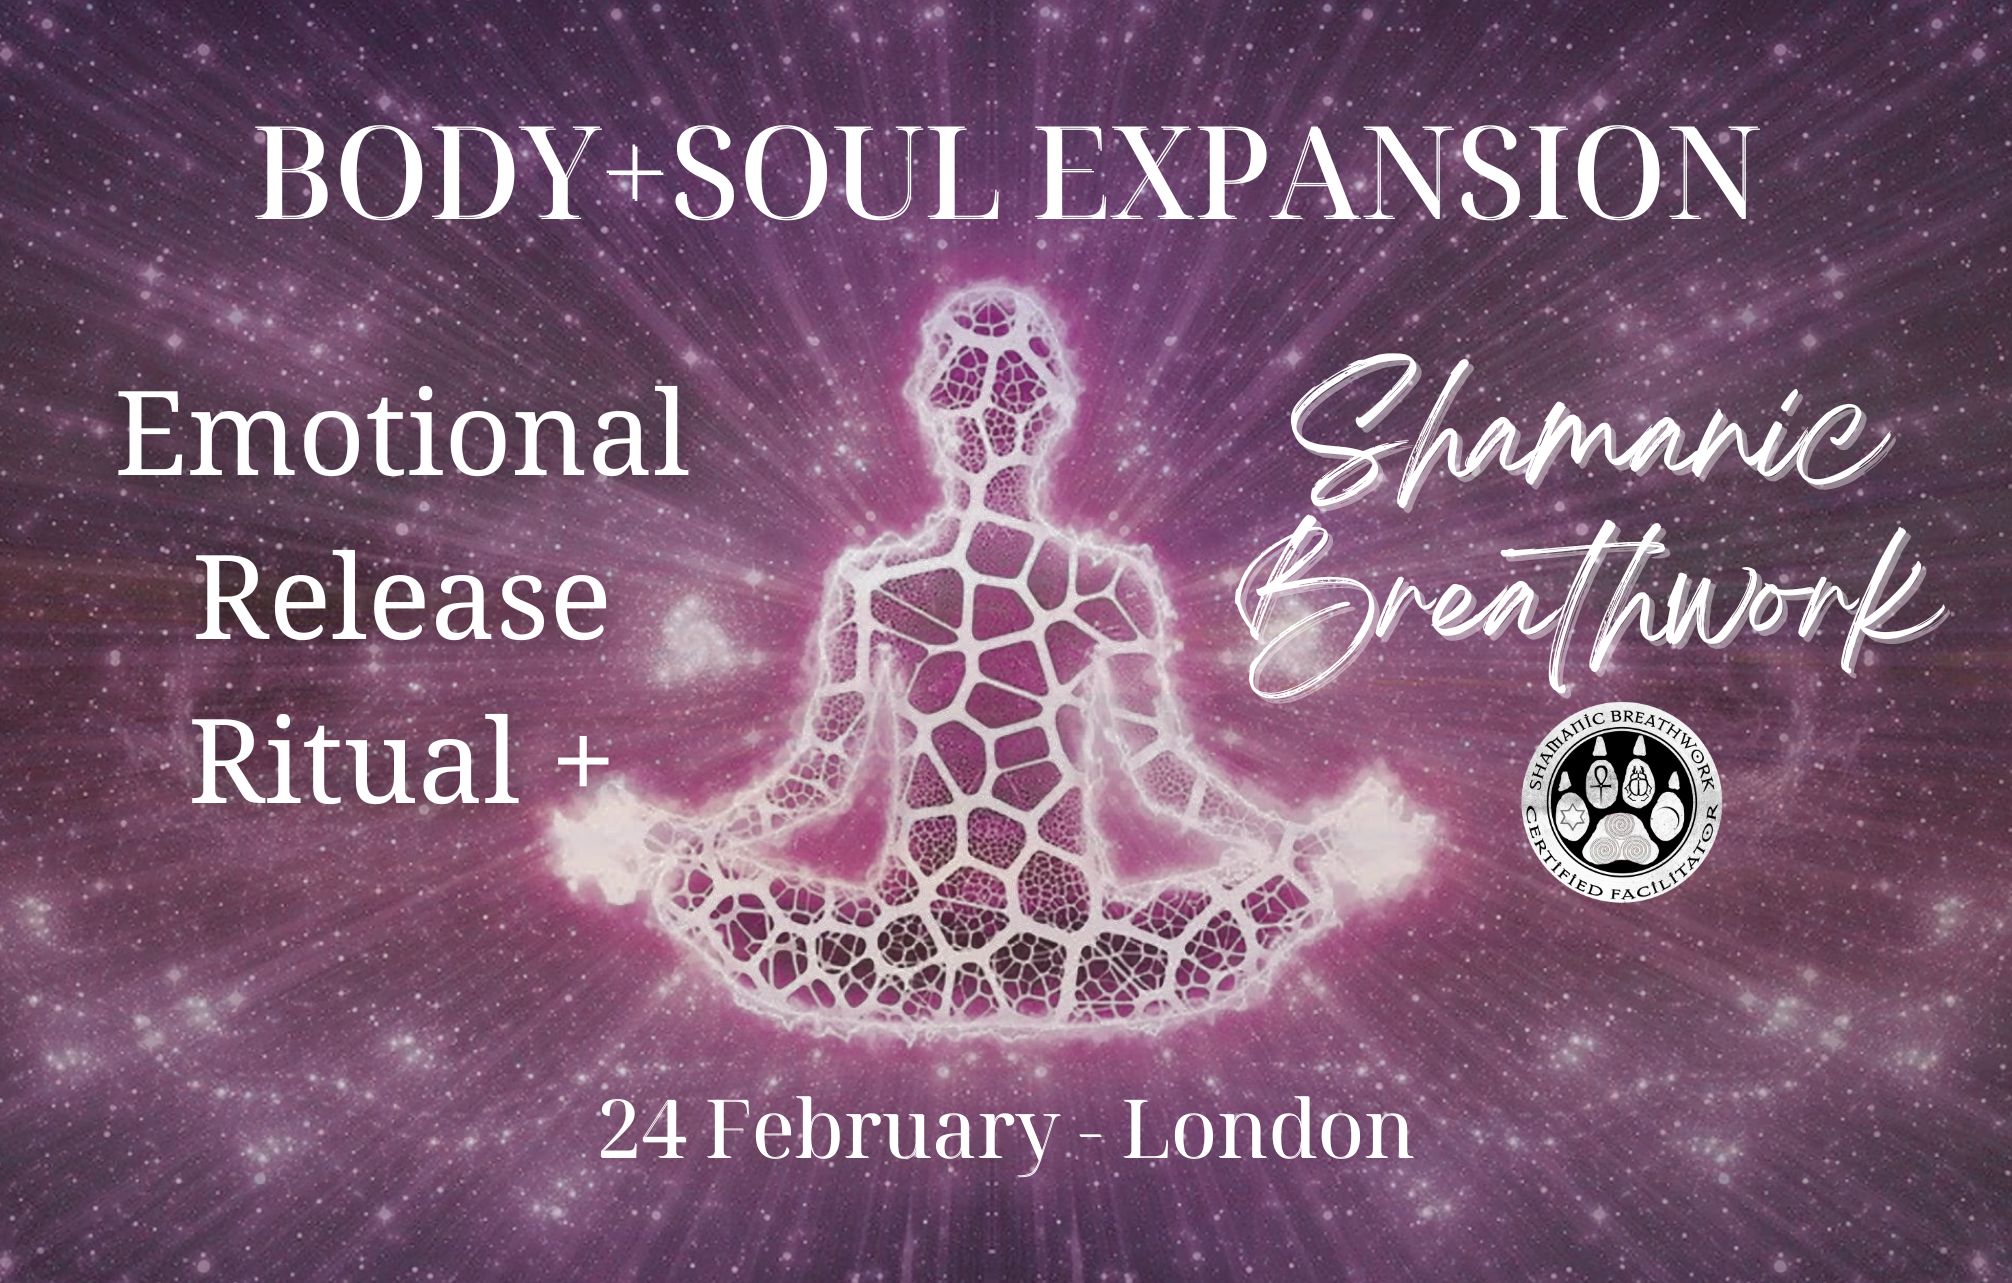 BODY+SOUL EXPANSION: Shamanic Breathwork + Emotional Release - London, London, United Kingdom